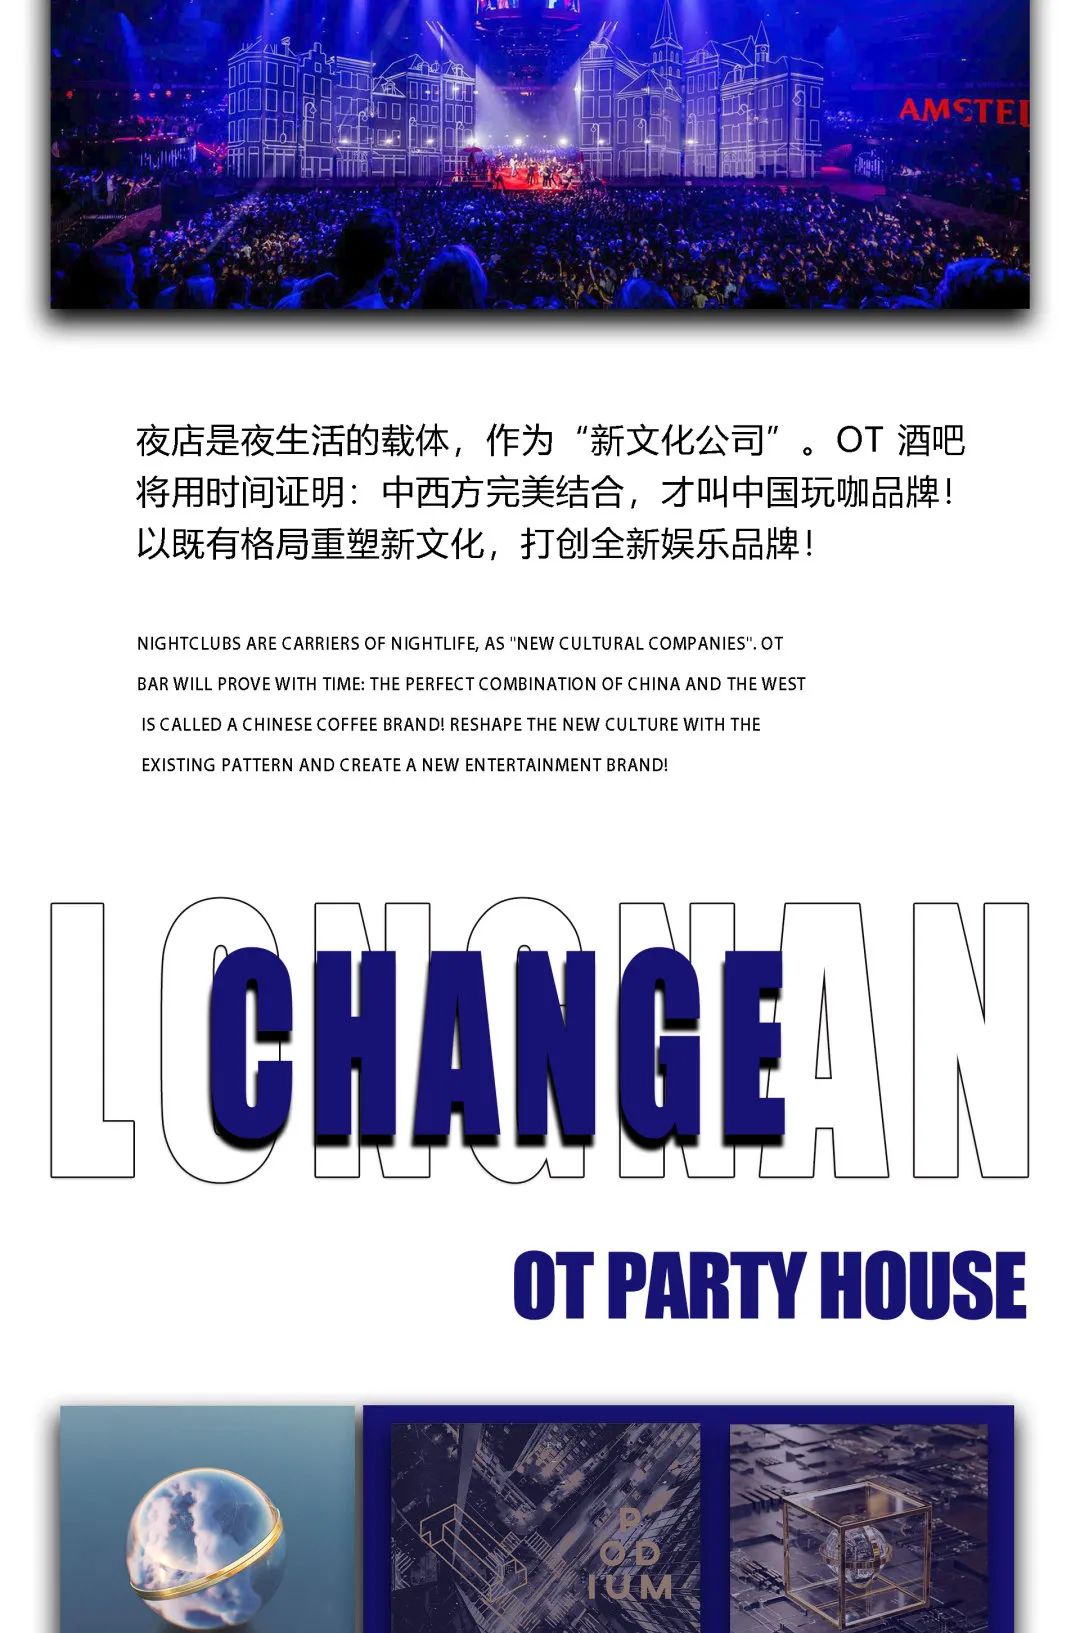 OT PARTY HOUSE | 每一步迈出，只为更好的未来-陇南OT酒吧/OT PARTY HOUSE